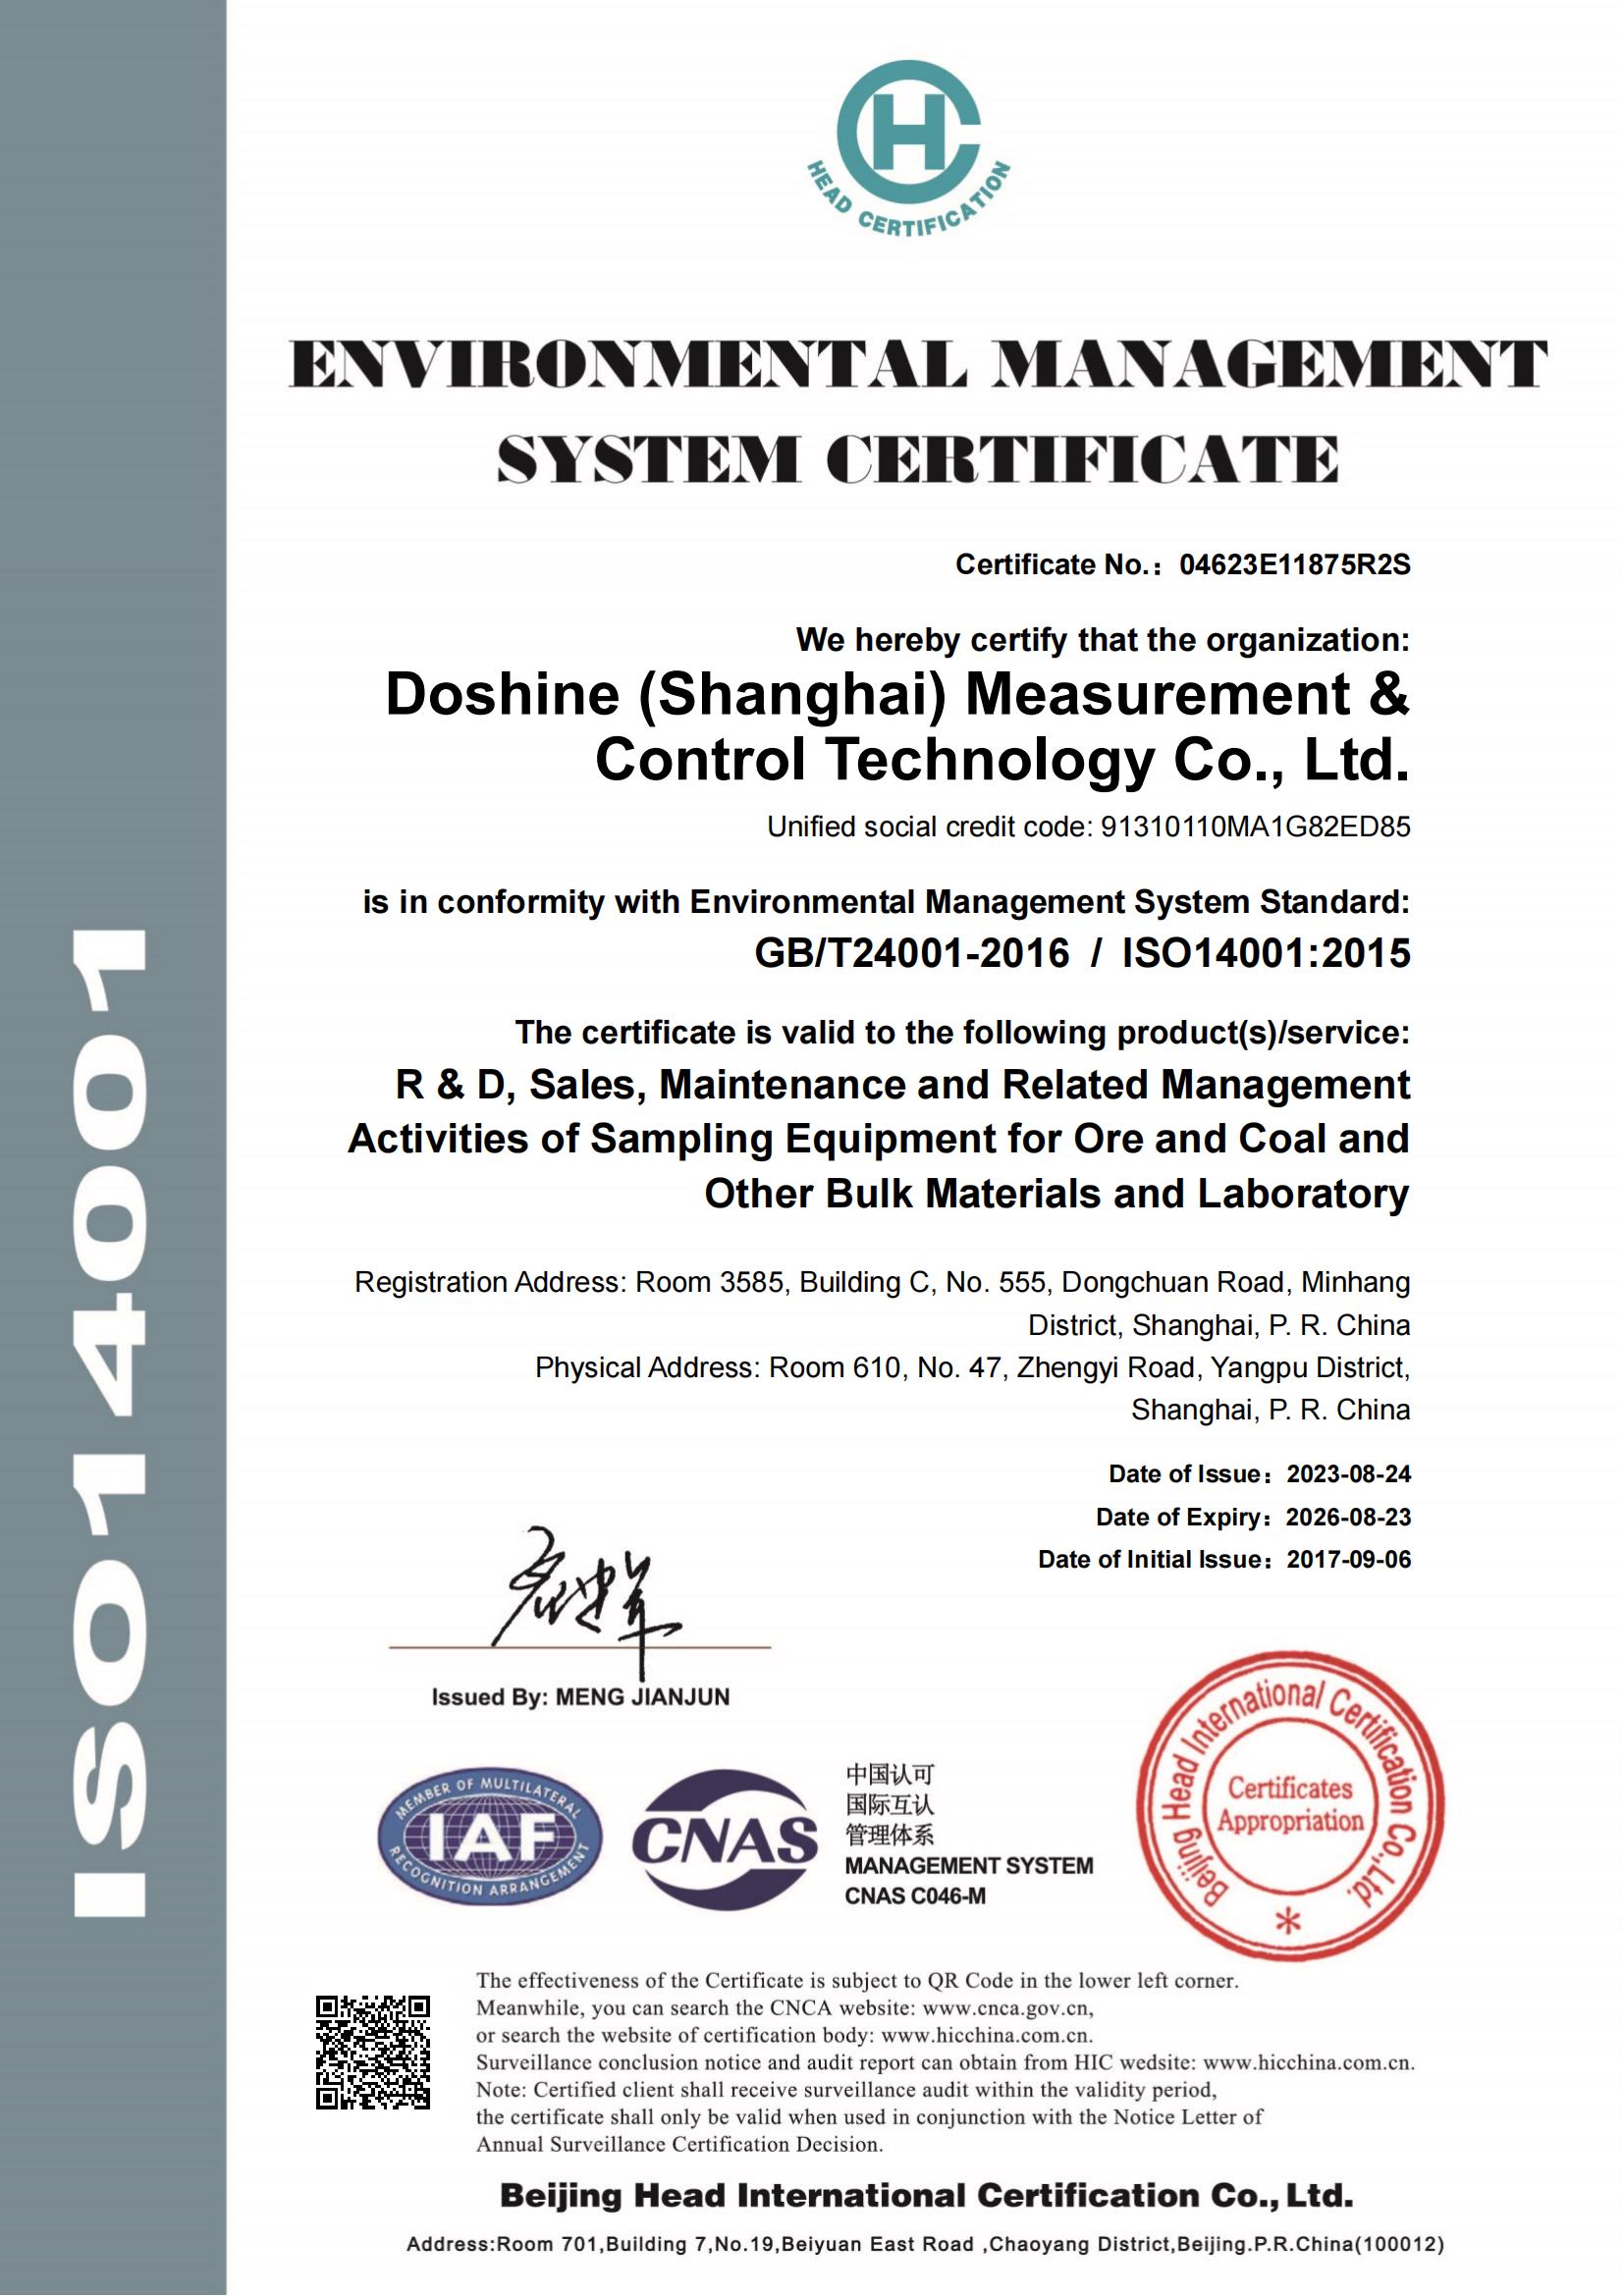 冬暄测控-环境管理体系认证证书--英文